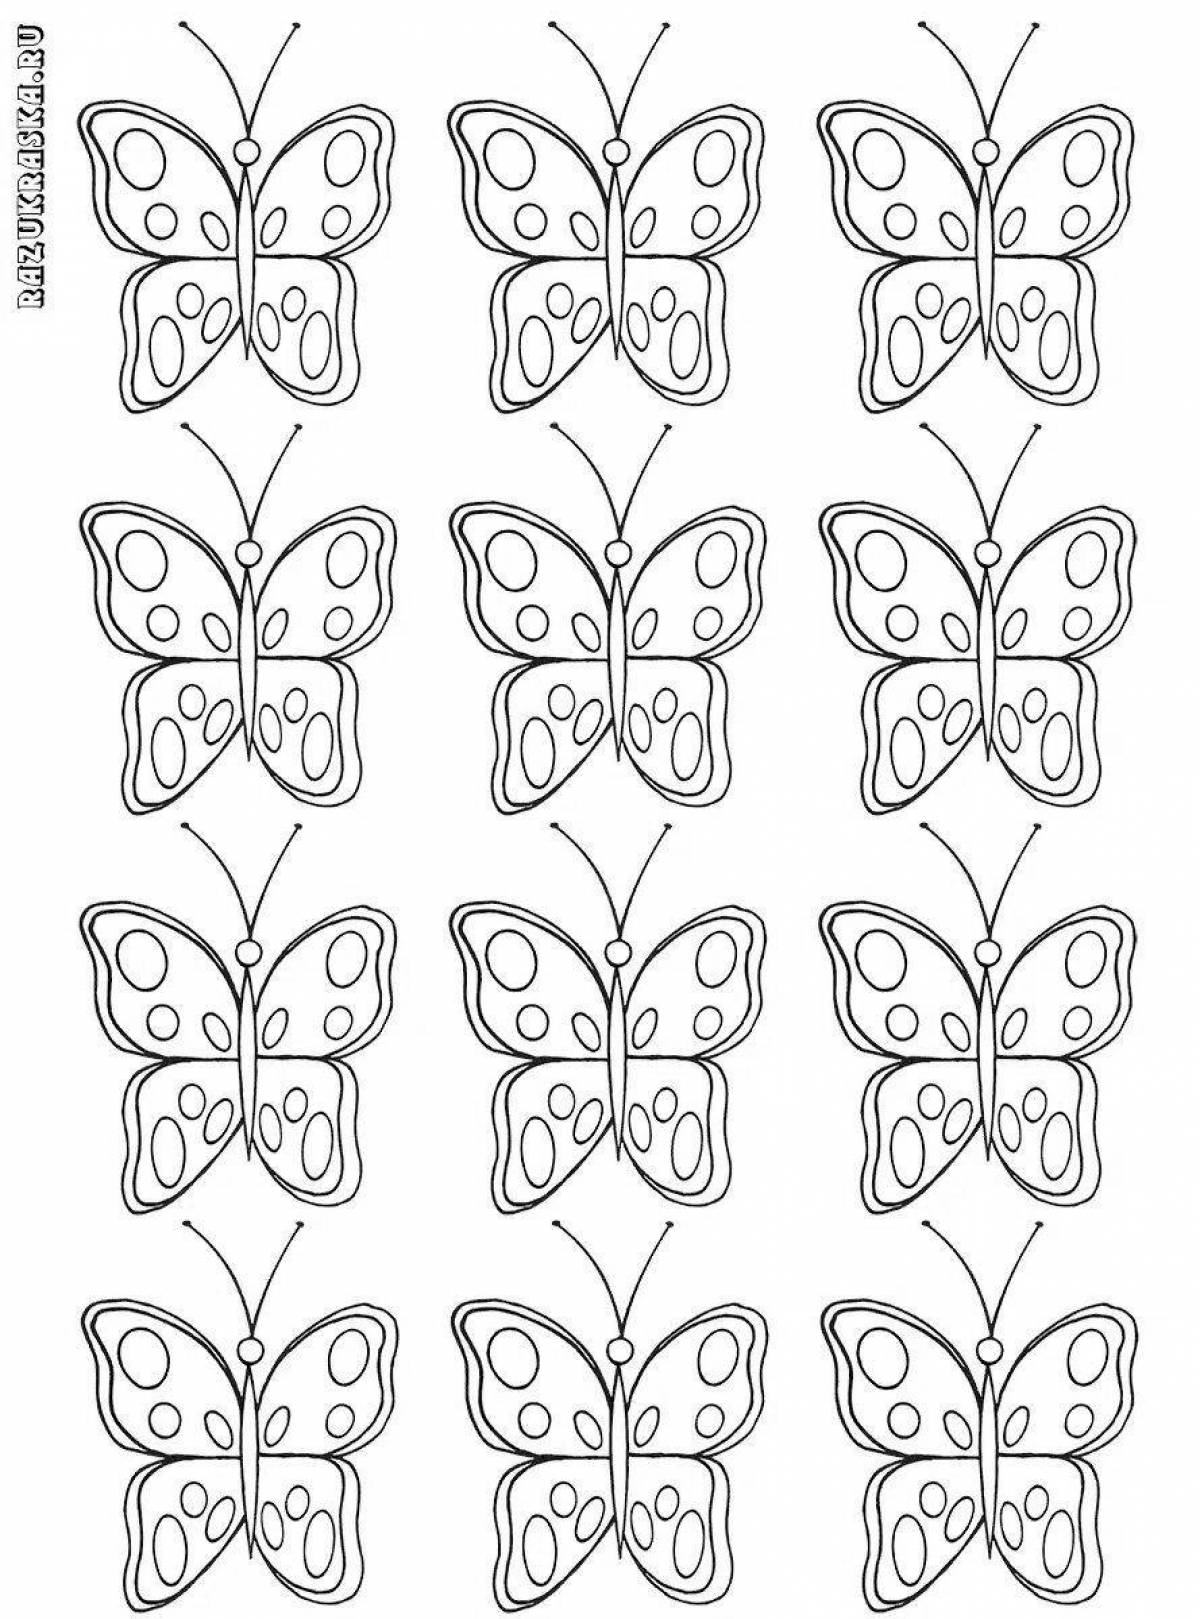 Many butterflies on one sheet